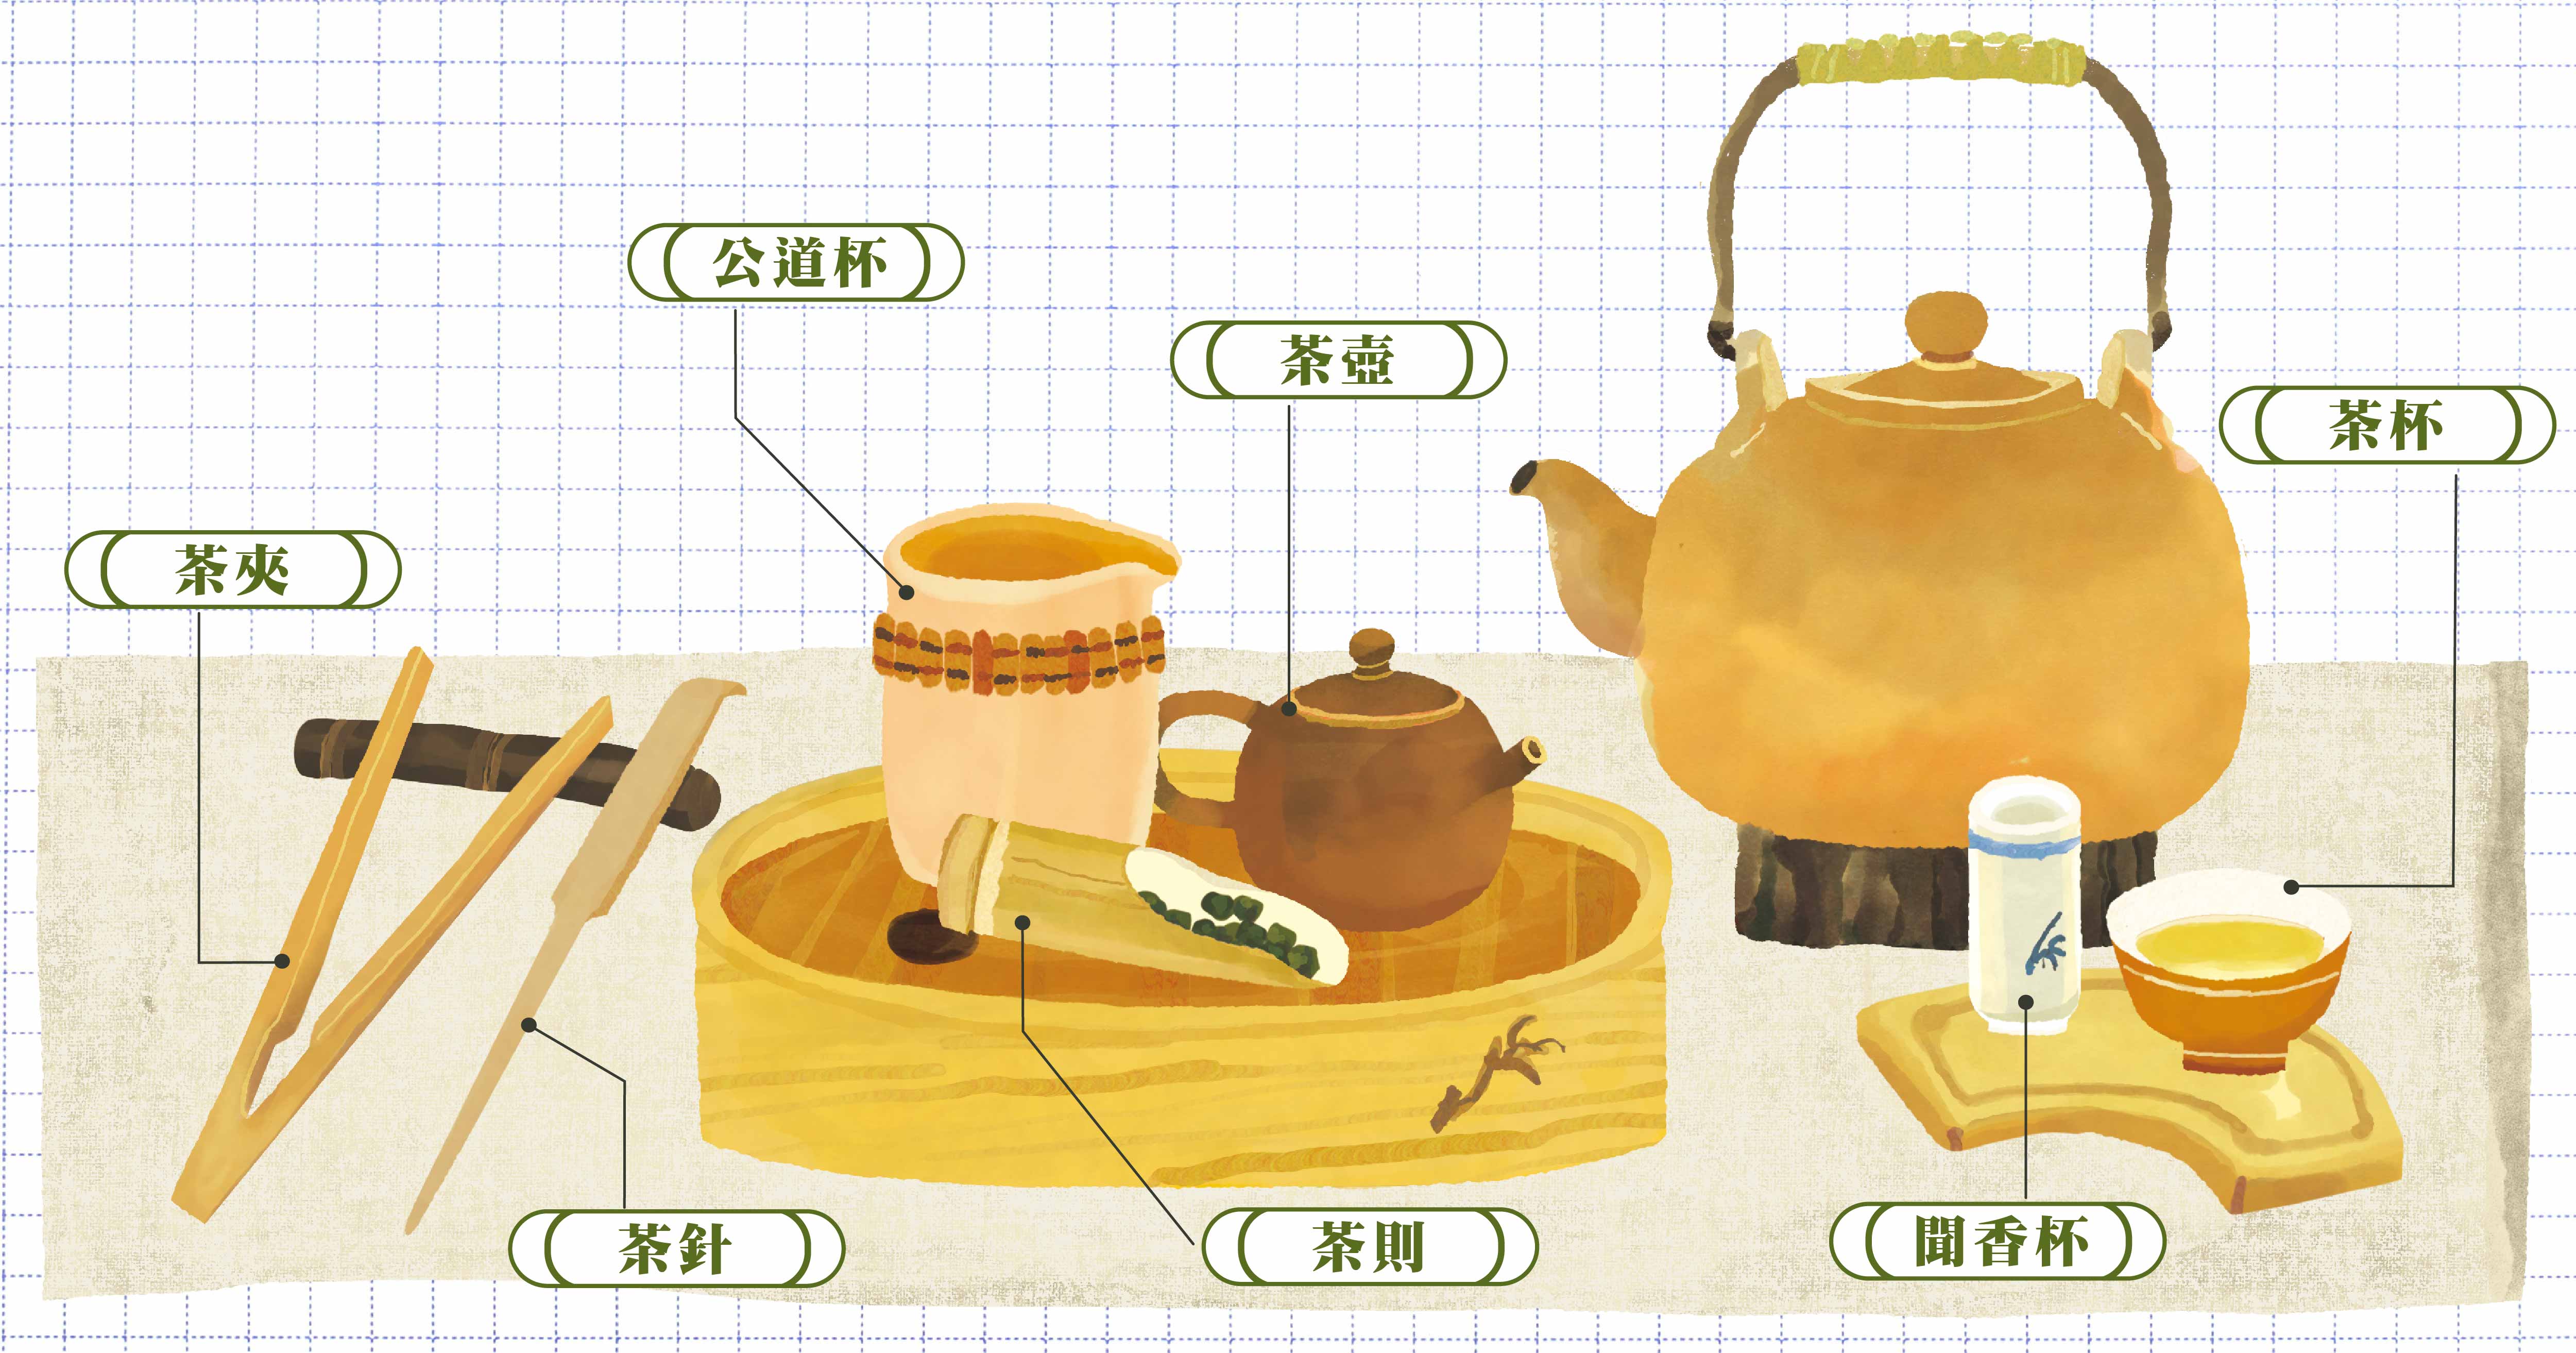 新手茶具七件組- 台灣主婦聯盟生活消費合作社